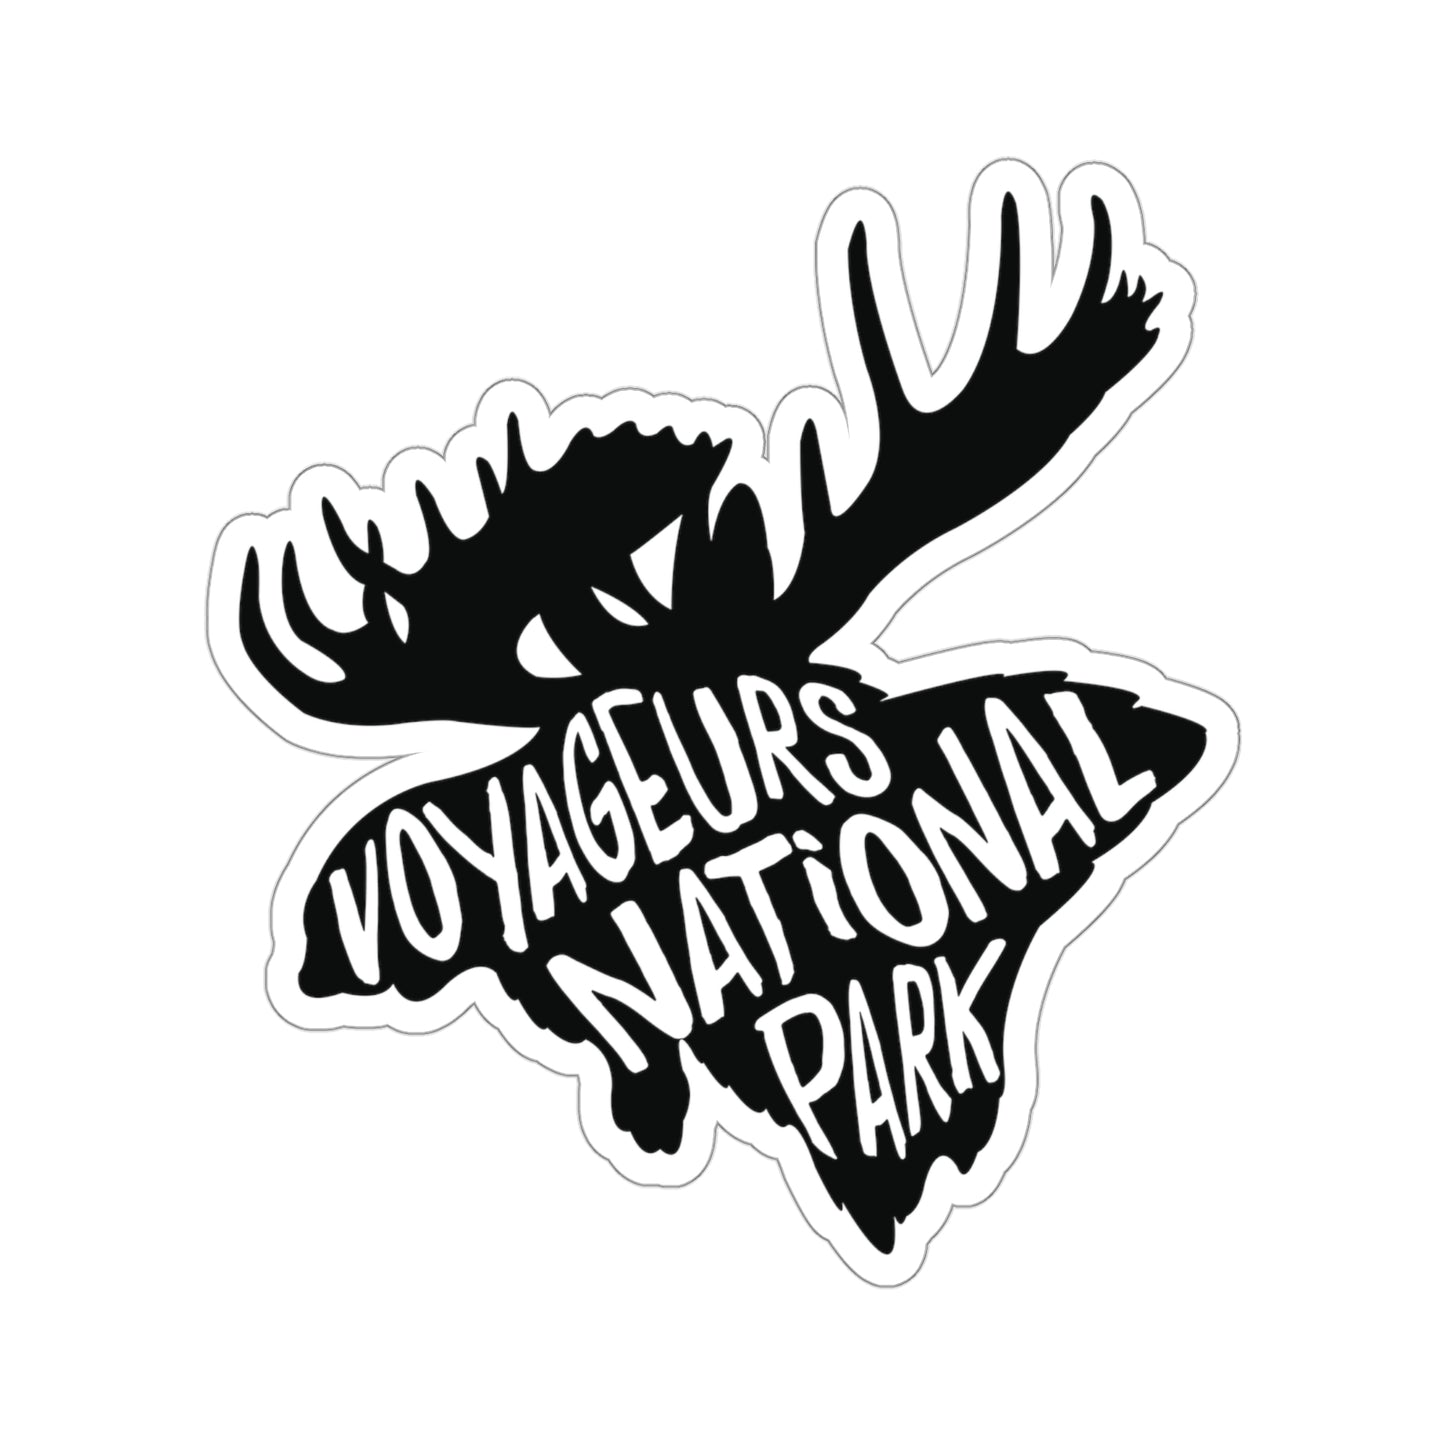 Voyageurs National Park Sticker - Moose